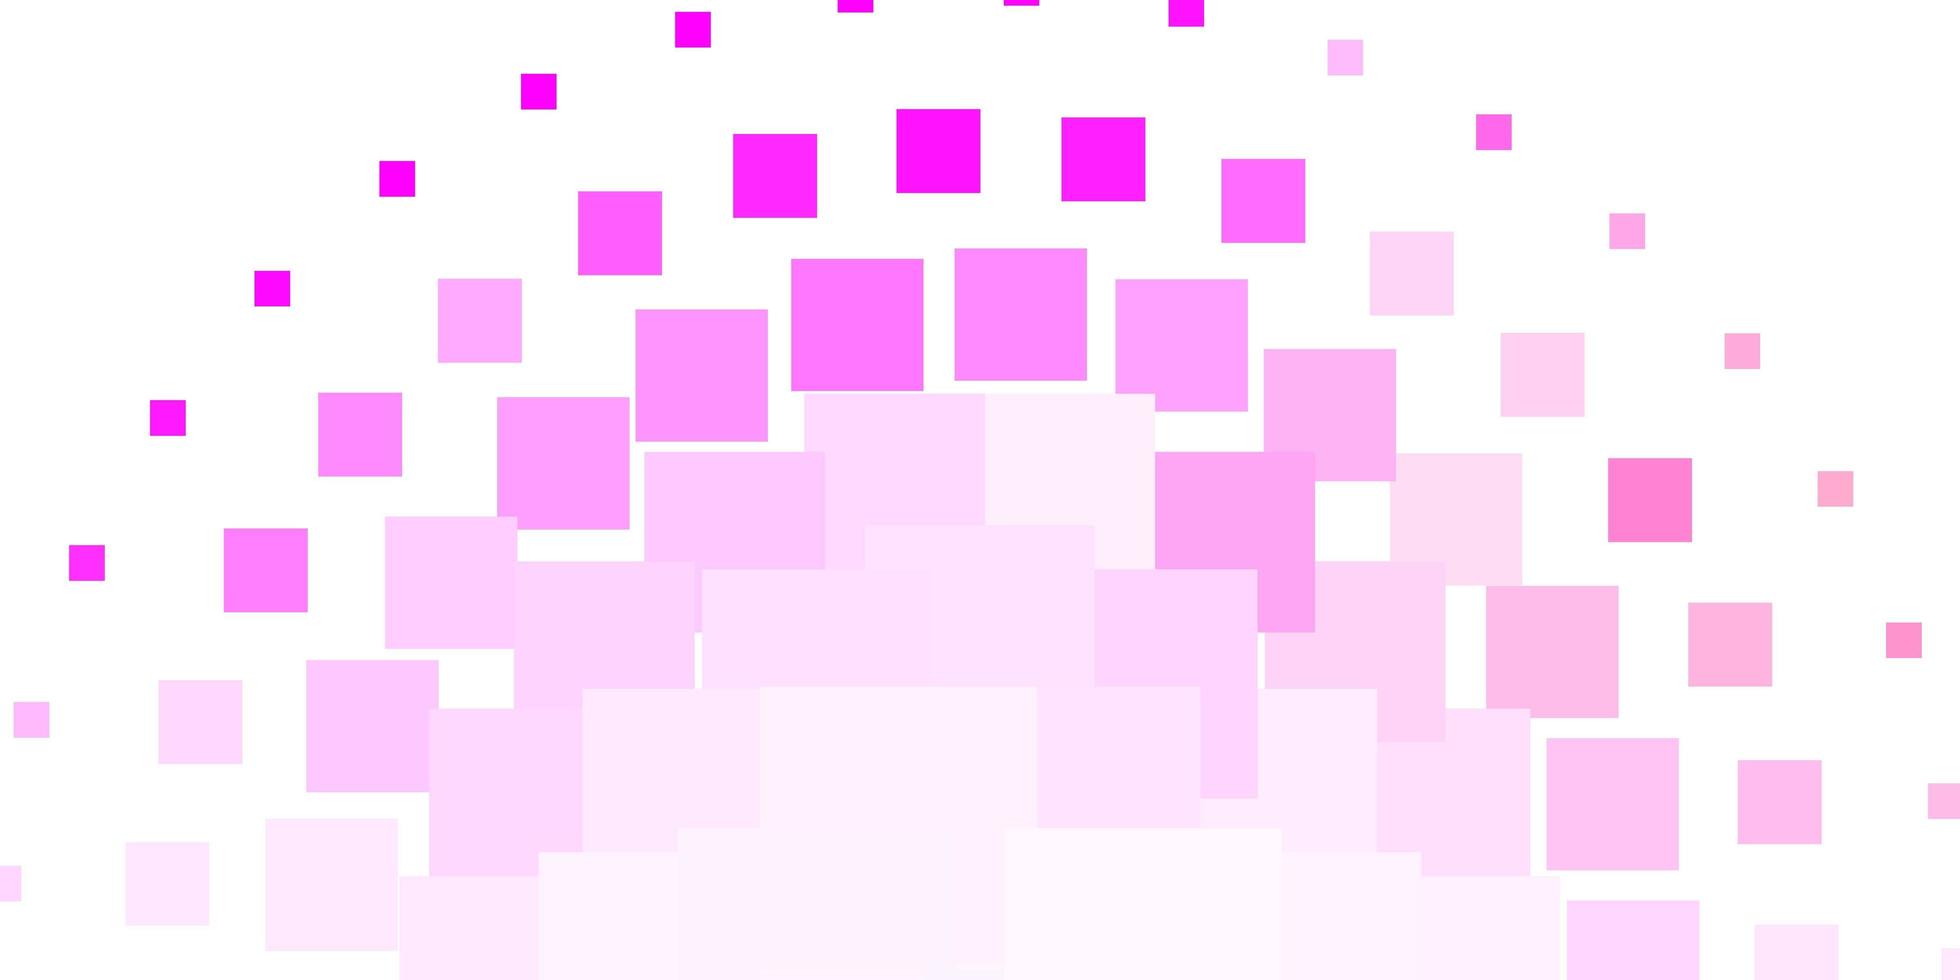 modello vettoriale rosa viola chiaro in rettangoli rettangoli con sfumatura colorata su sfondo astratto miglior design per il tuo banner poster pubblicitario